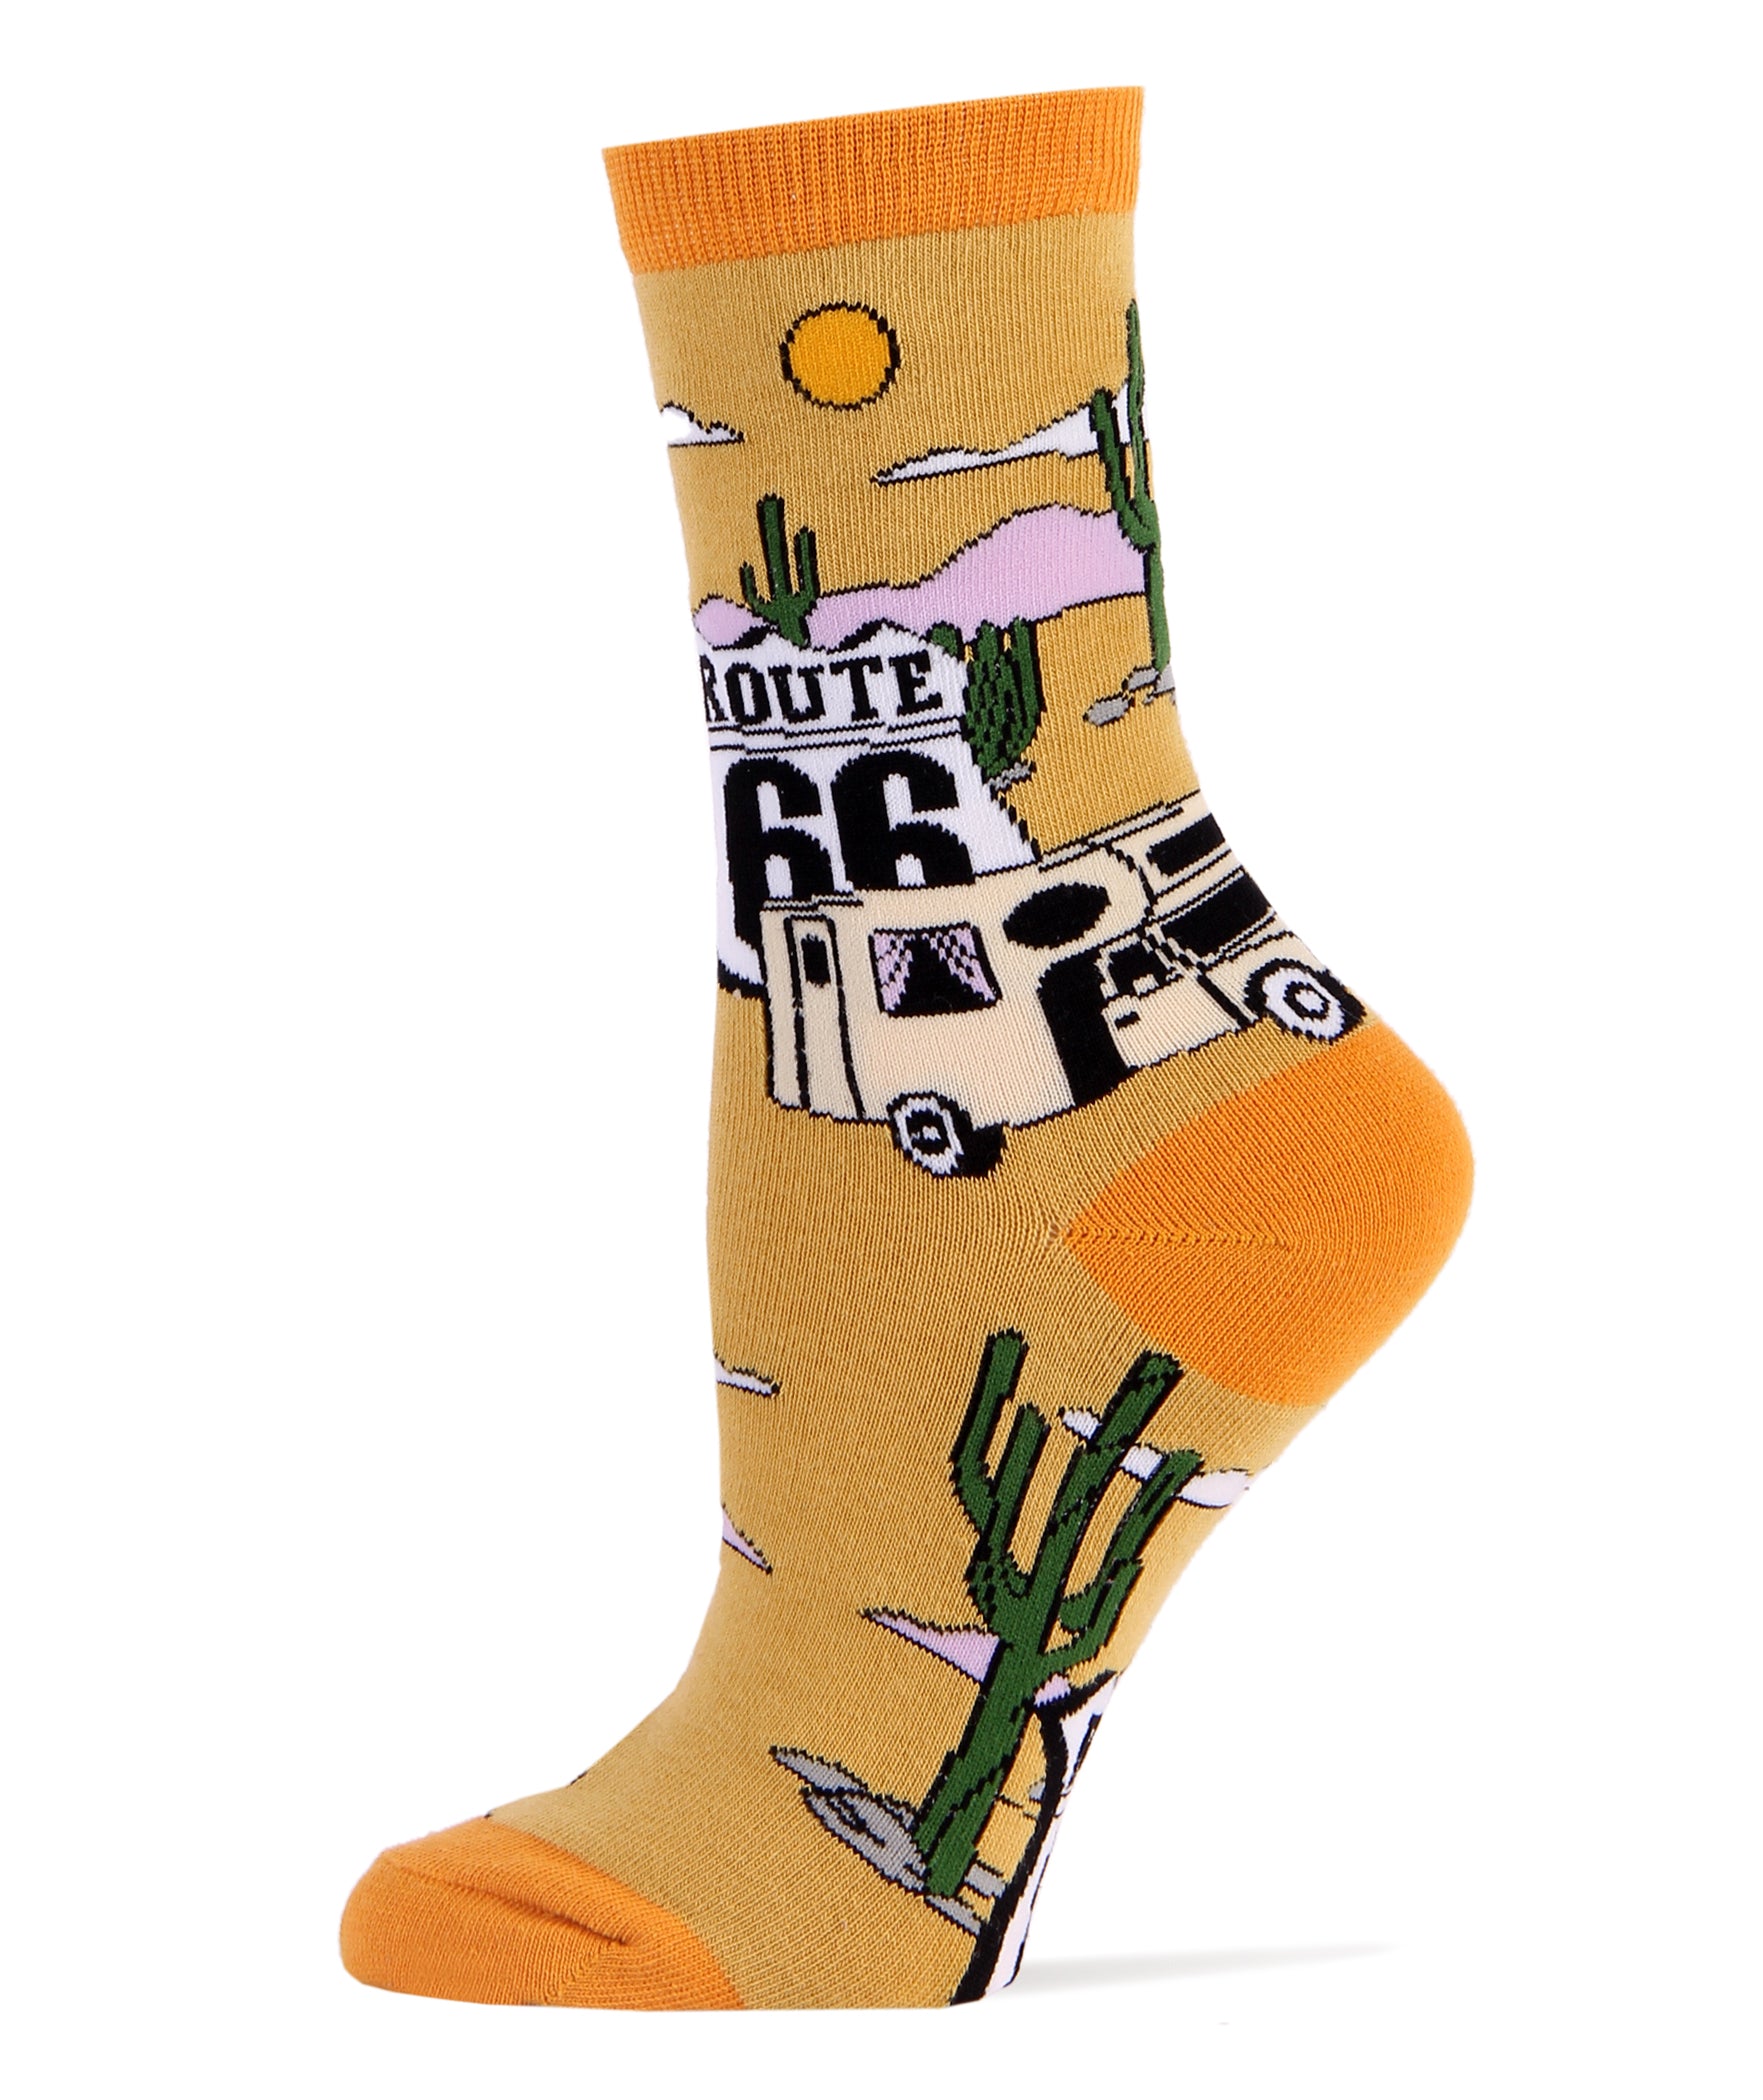 Get Your Kicks Socks | Novelty Crew Socks For Women